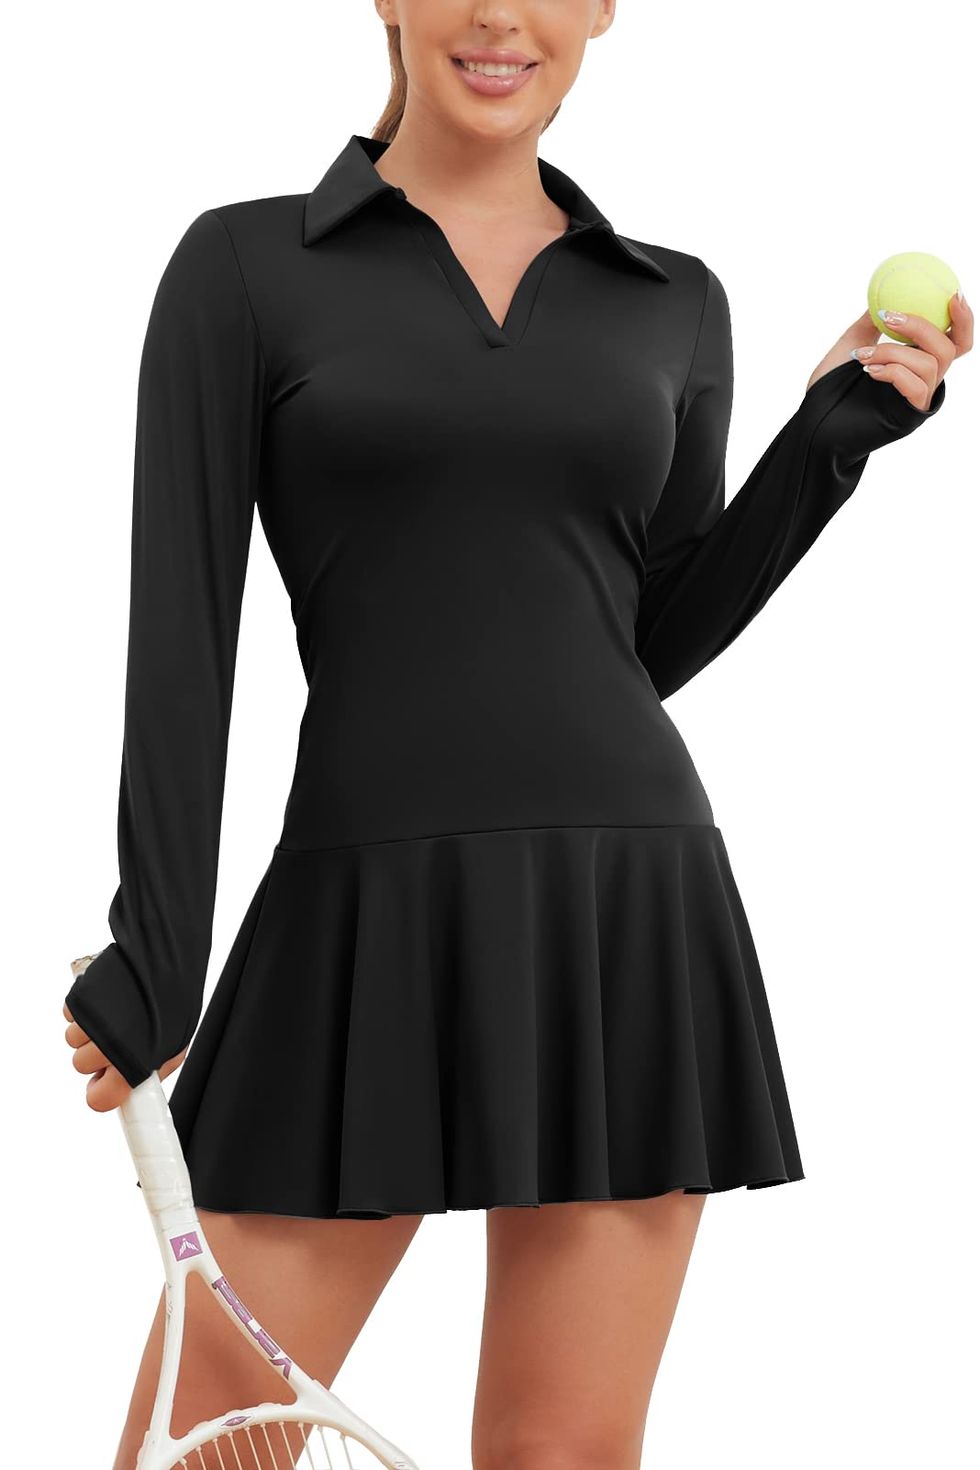  Fengbay Women Tennis Dress Golf Dress Workout Dress